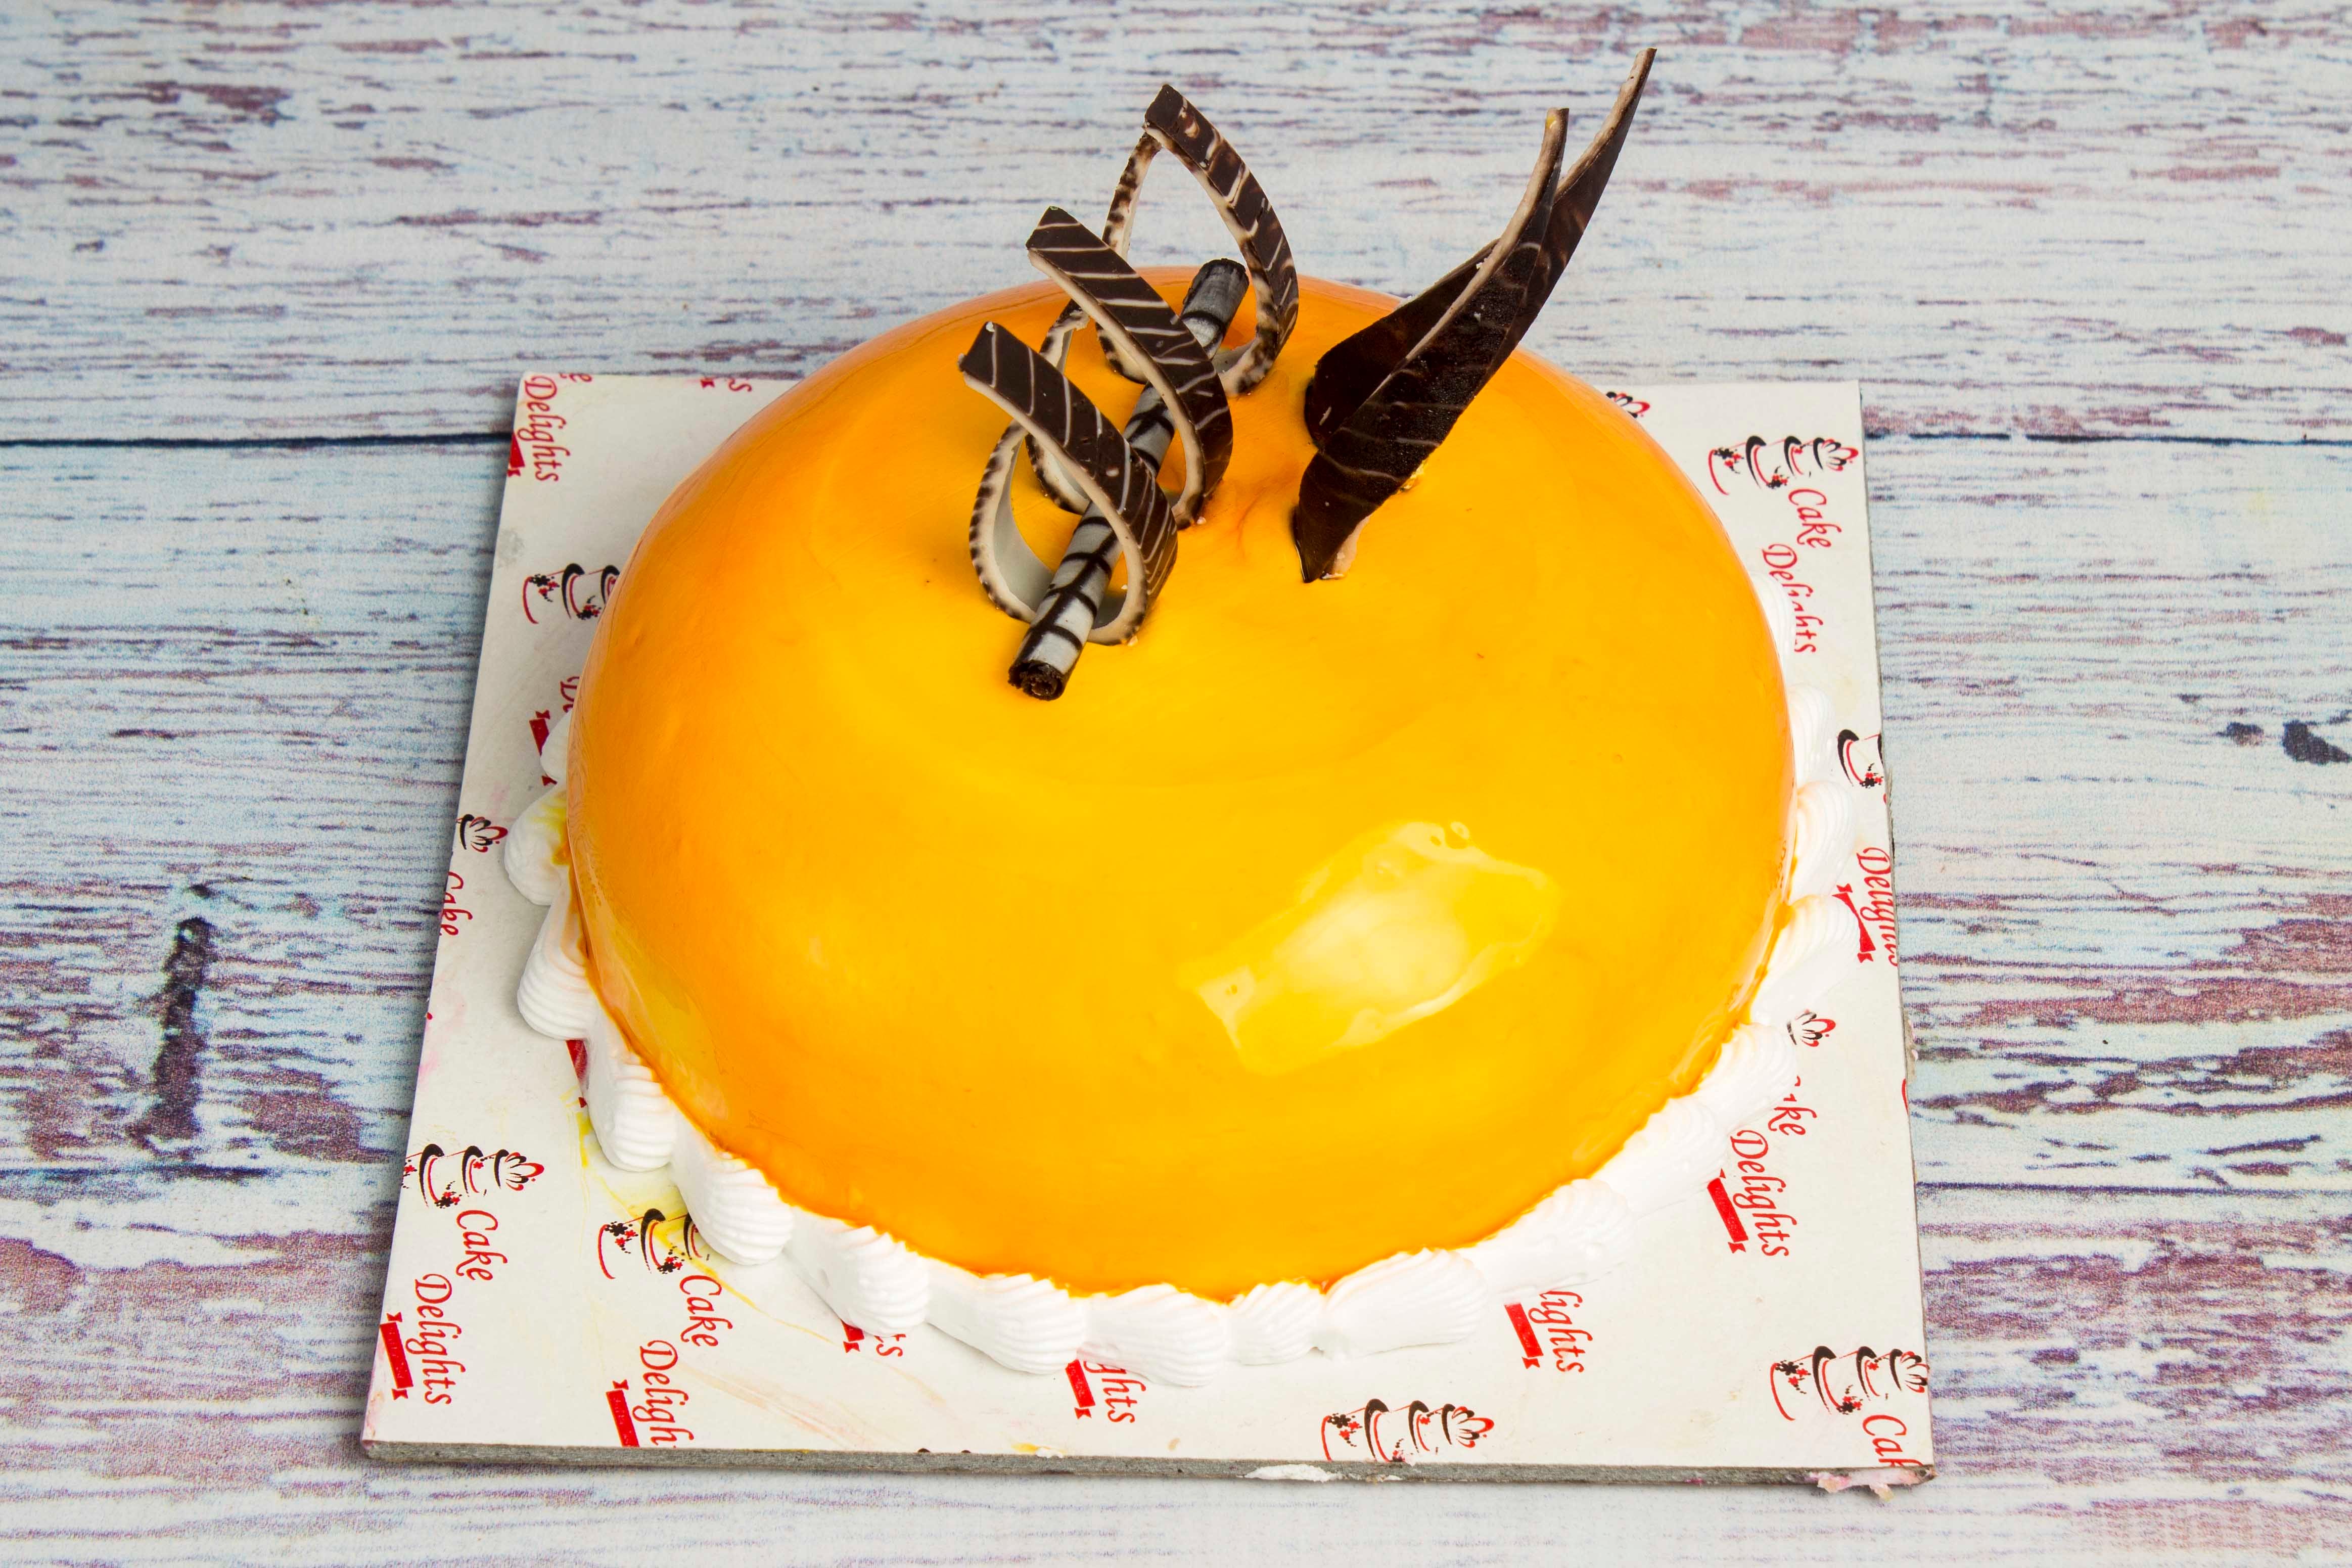 Cake Delights, T. Nagar order online - Zomato